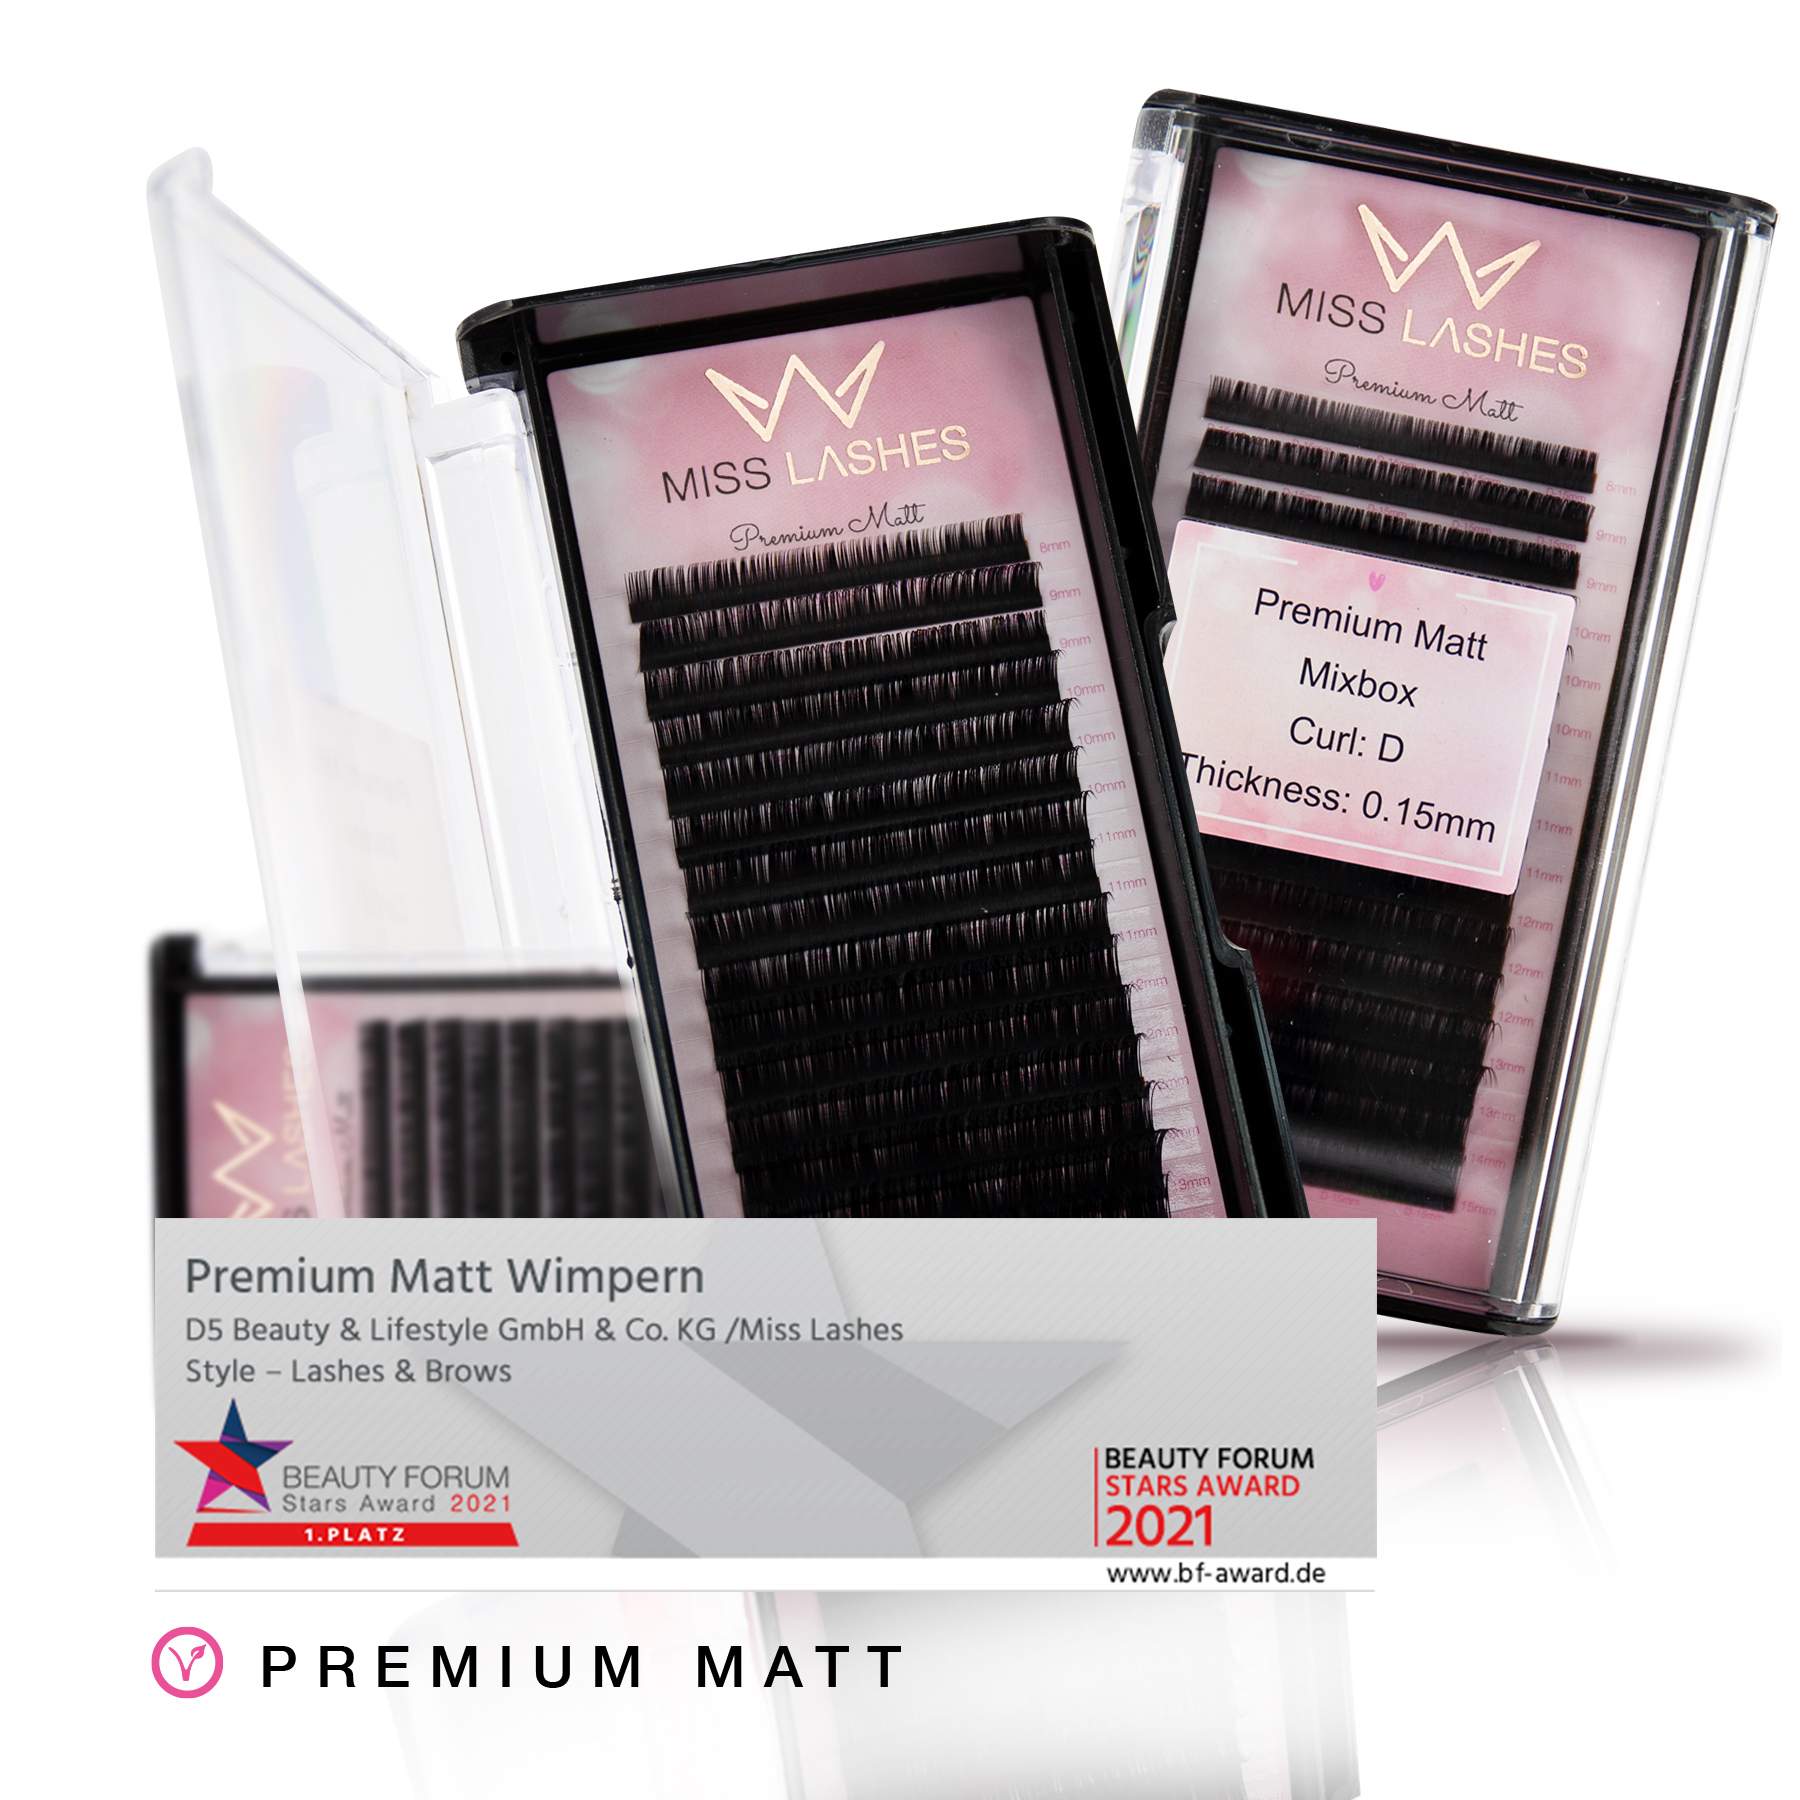 Premium Matt | 1:1 | Volume